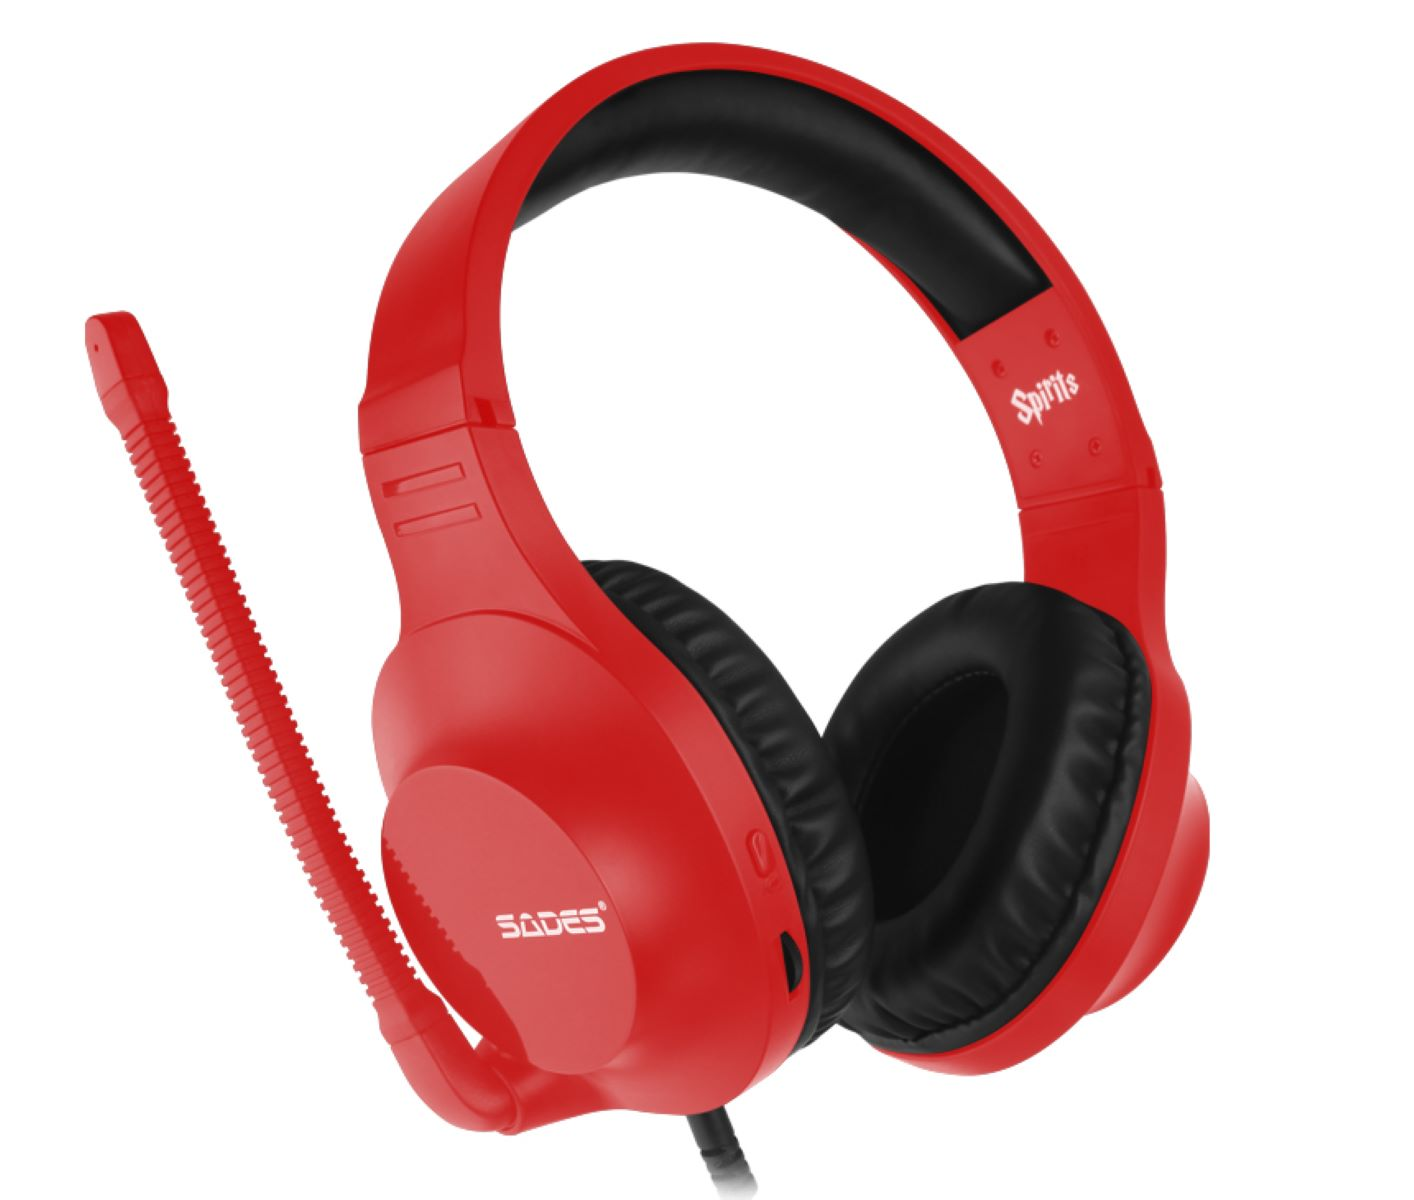 SADES Spirits Gaming rot Headset SA-721, Over-ear